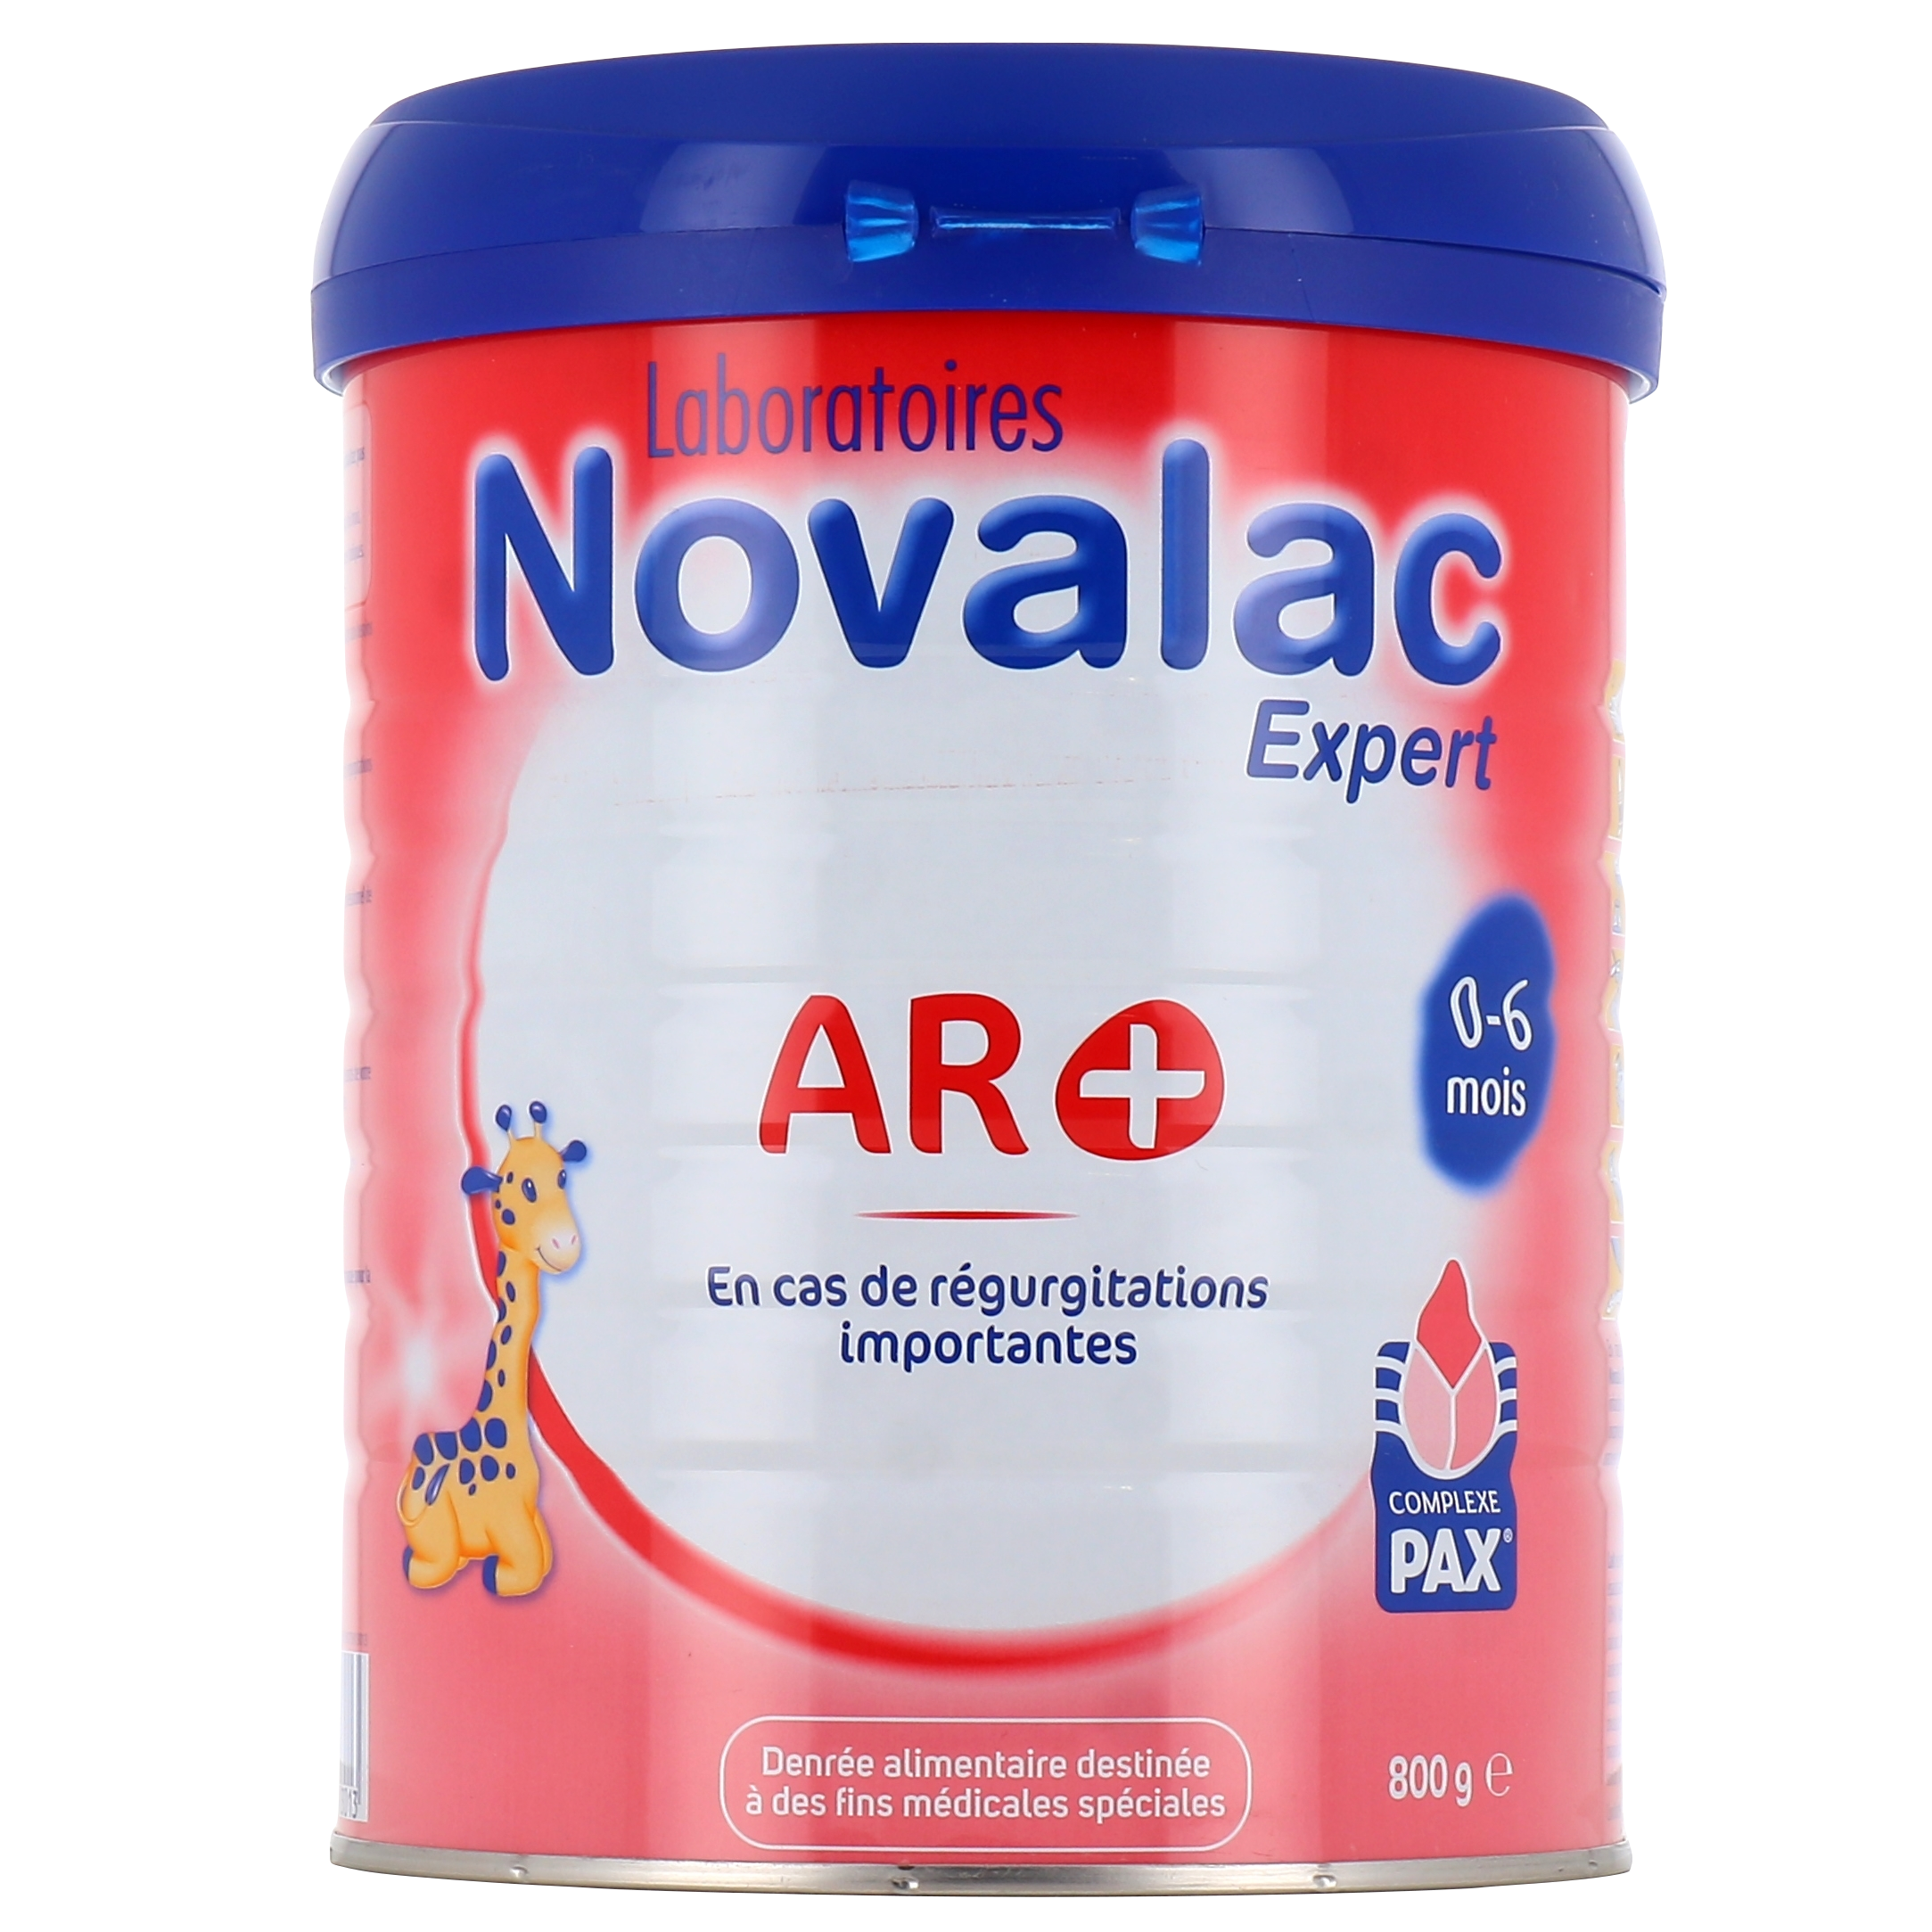 Novalac AR+ Lait anti régurgitations - Formule épaissie : RGO